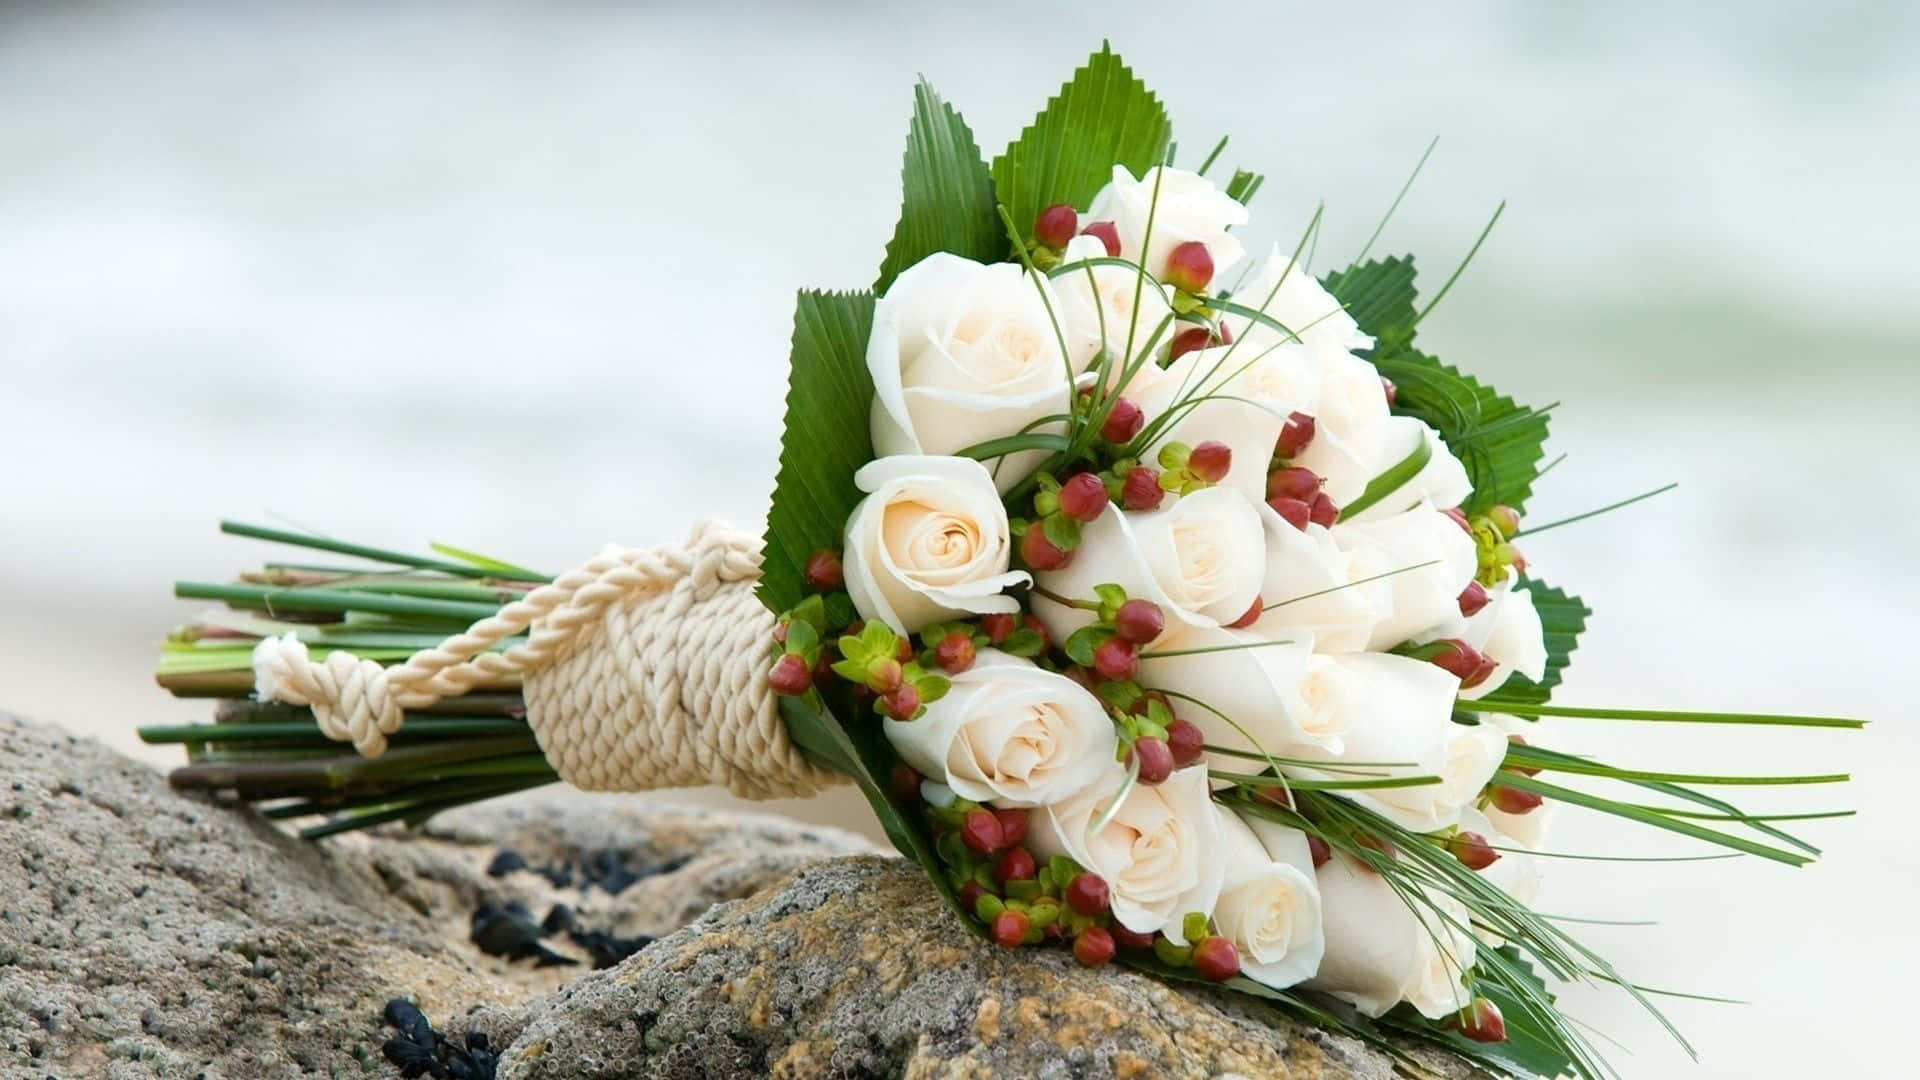 Flowers arranged in an elegant bouquet Wallpaper